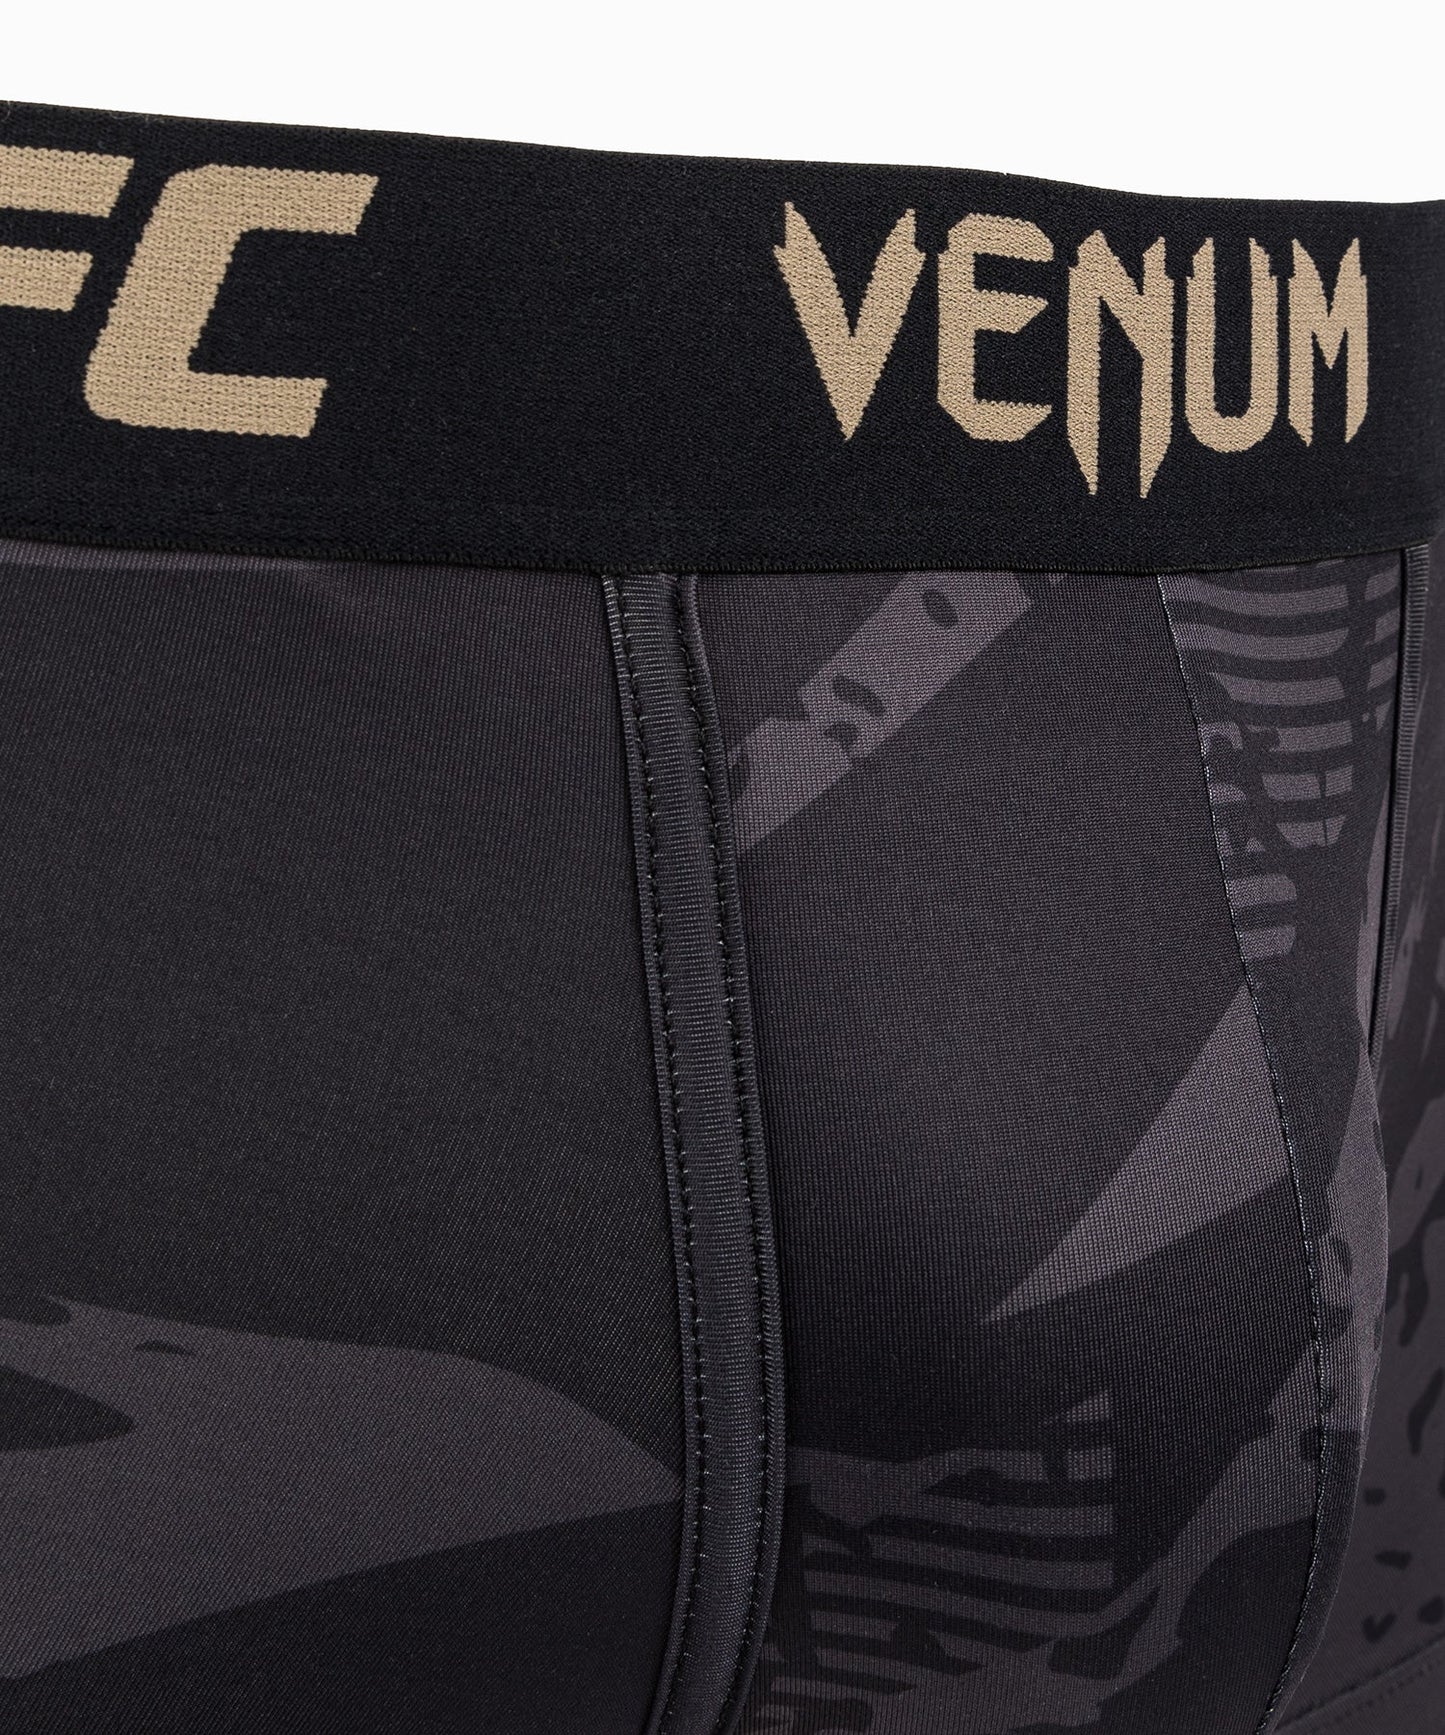 UFC Adrenaline by Venum Fight Week Men’s Weigh-In Underwear - Urban Camo